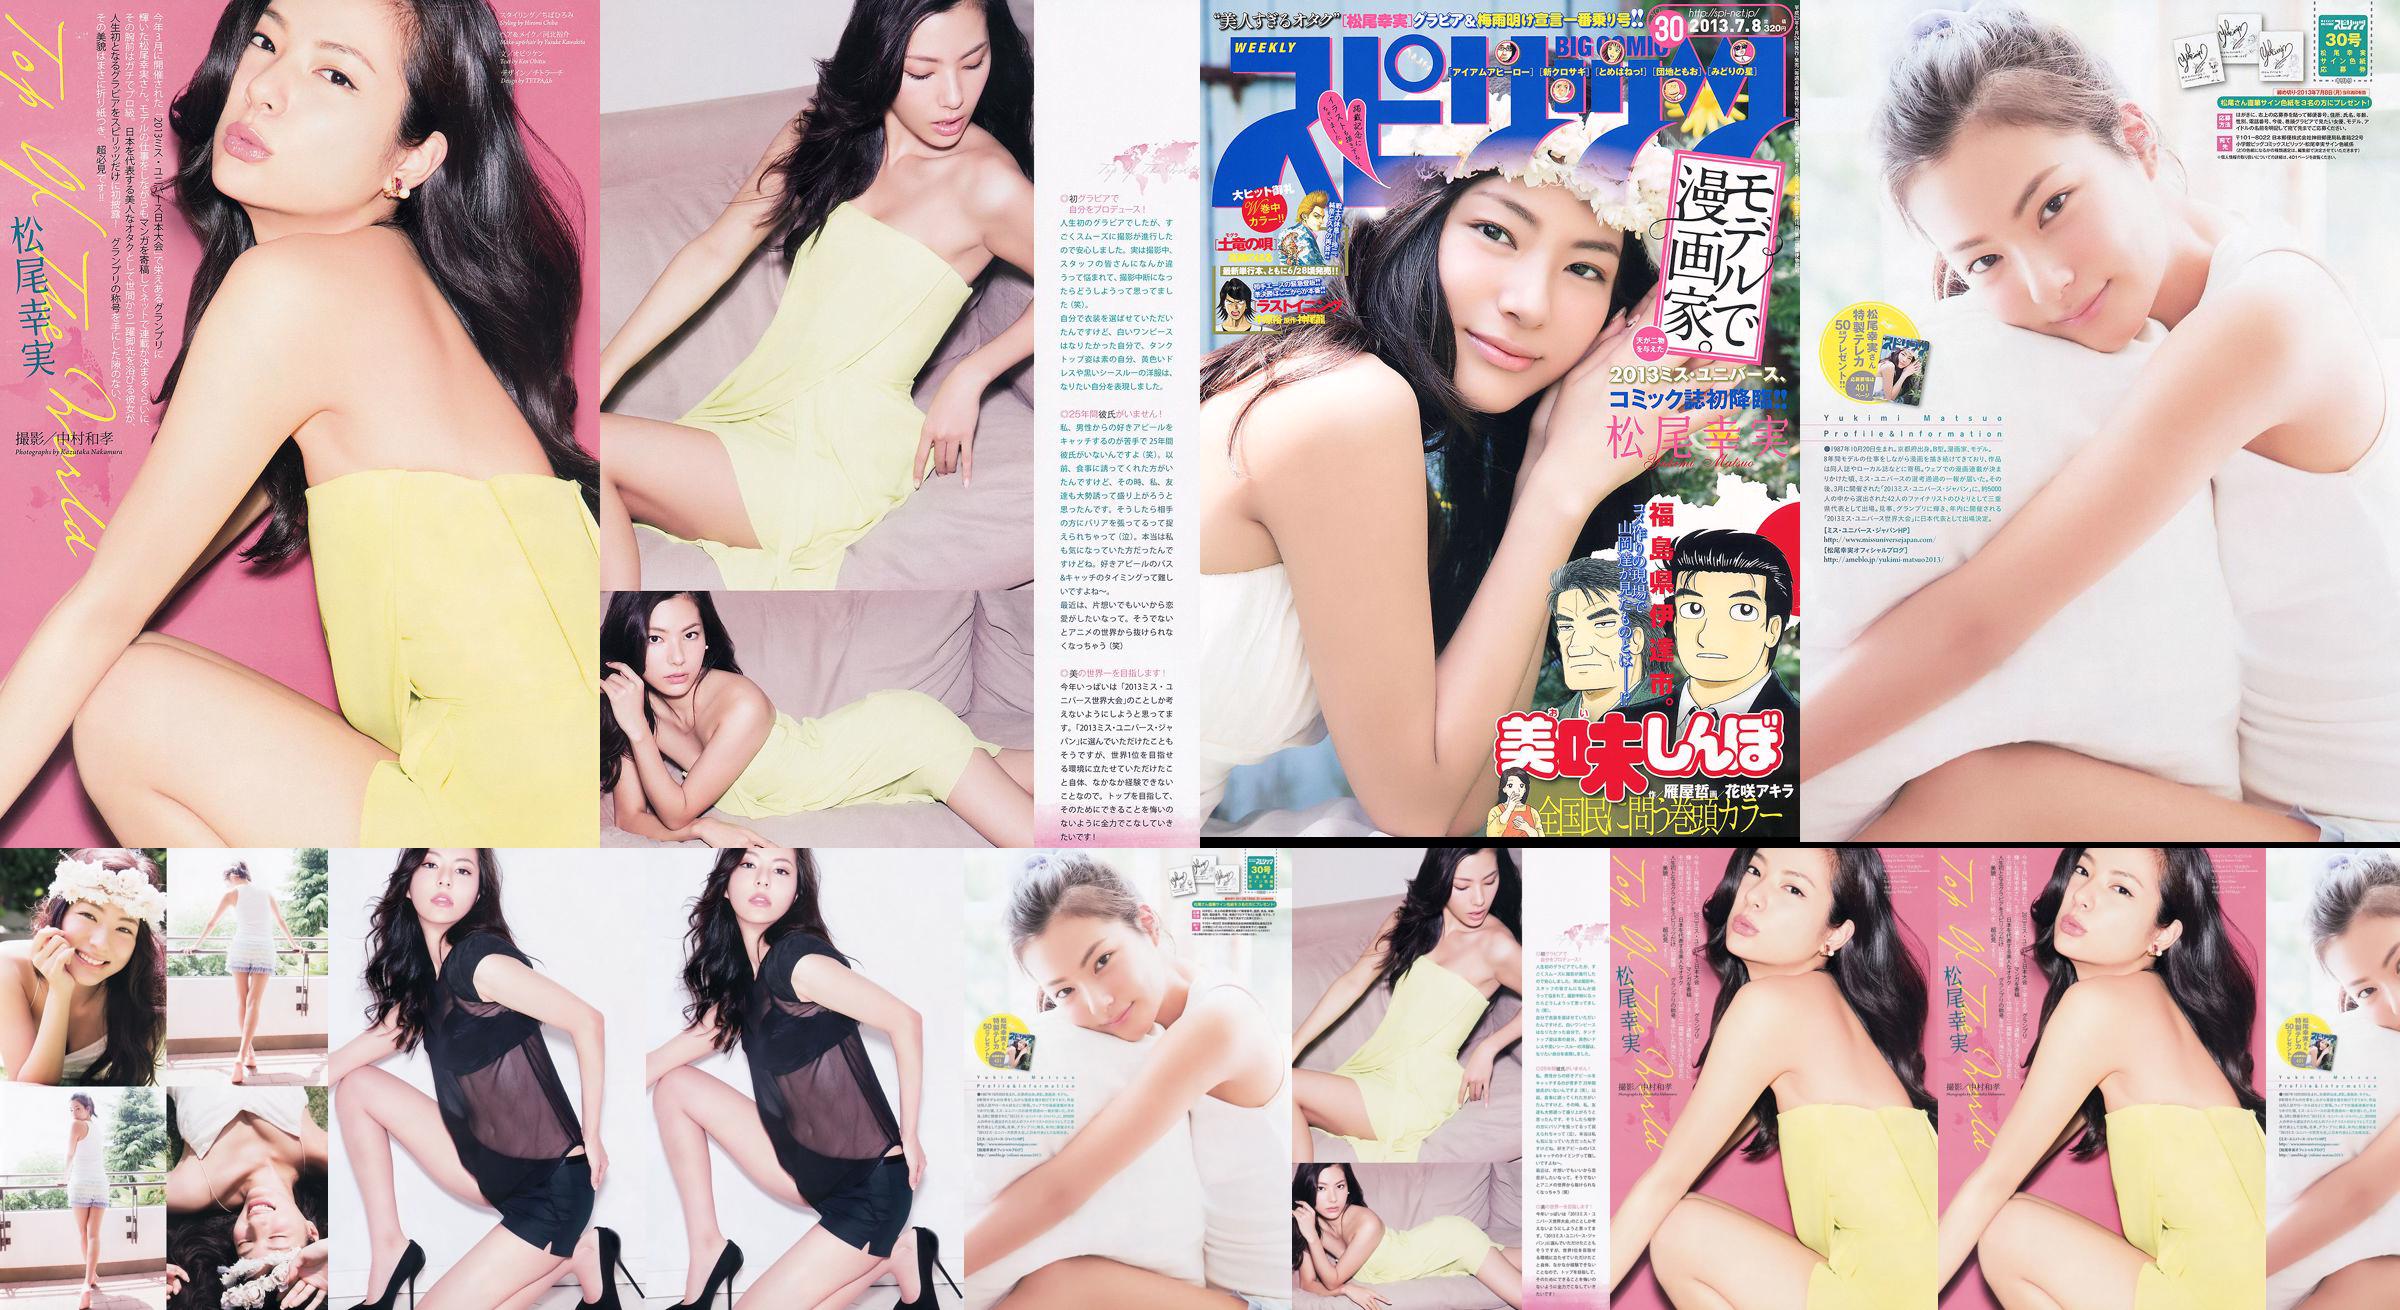 [Weekly Big Comic Spirits] Komi Matsuo 2013 No.30 Photo Magazine No.436a78 Page 1